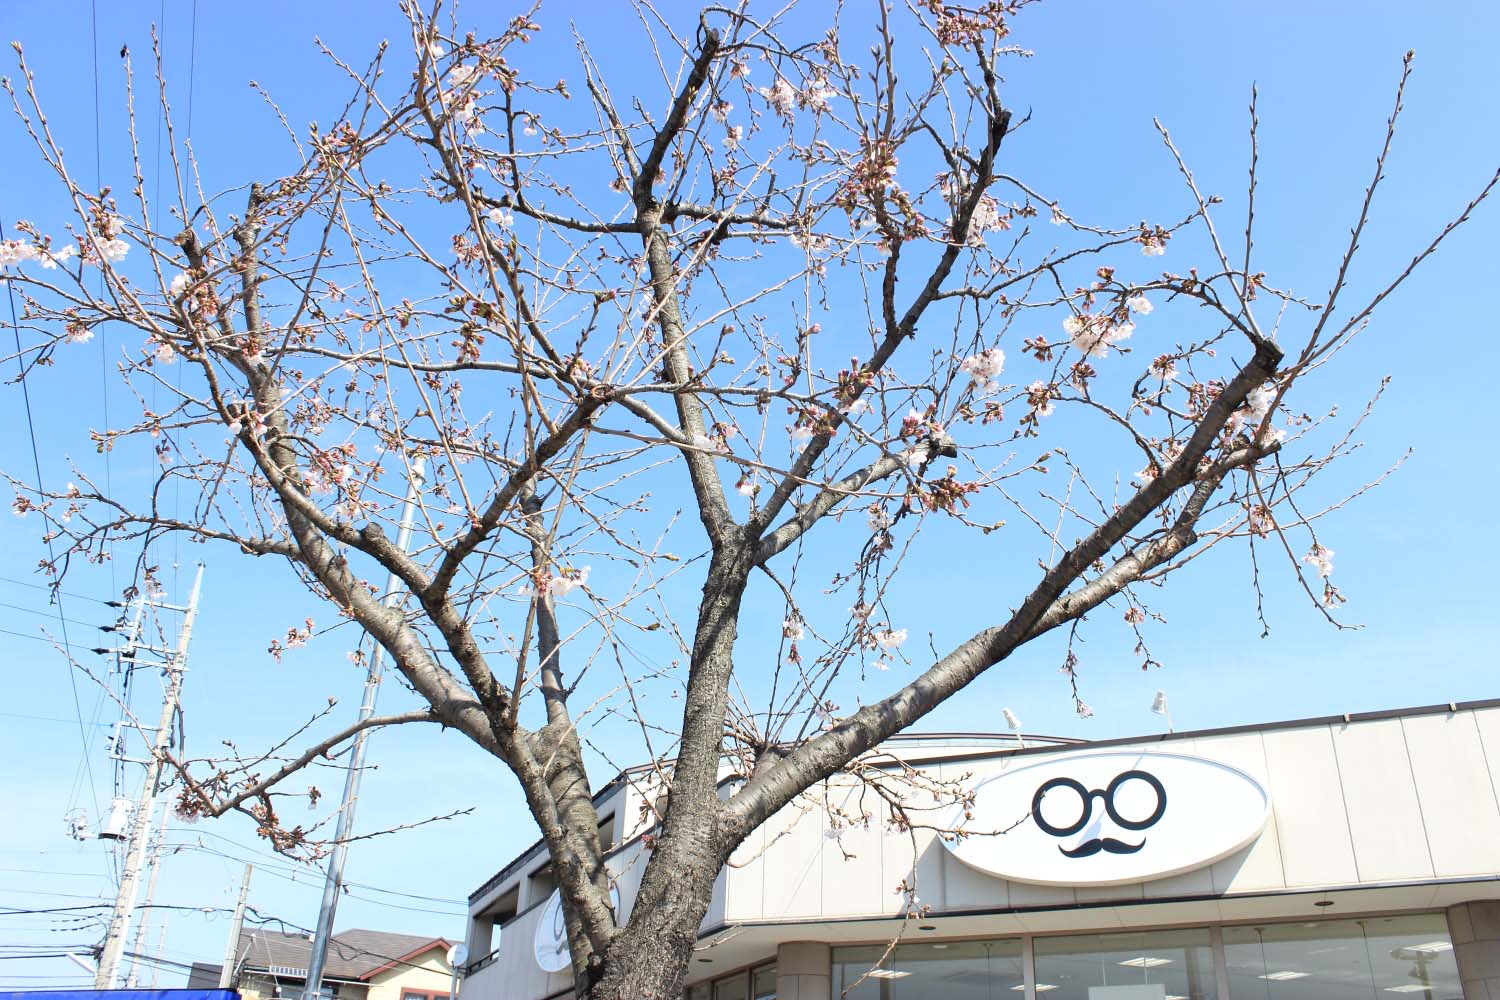 クマ店長の桜観測３月３１日　今日で３月も最後。だいぶ桜も咲いてきました。page-visual クマ店長の桜観測３月３１日　今日で３月も最後。だいぶ桜も咲いてきました。ビジュアル